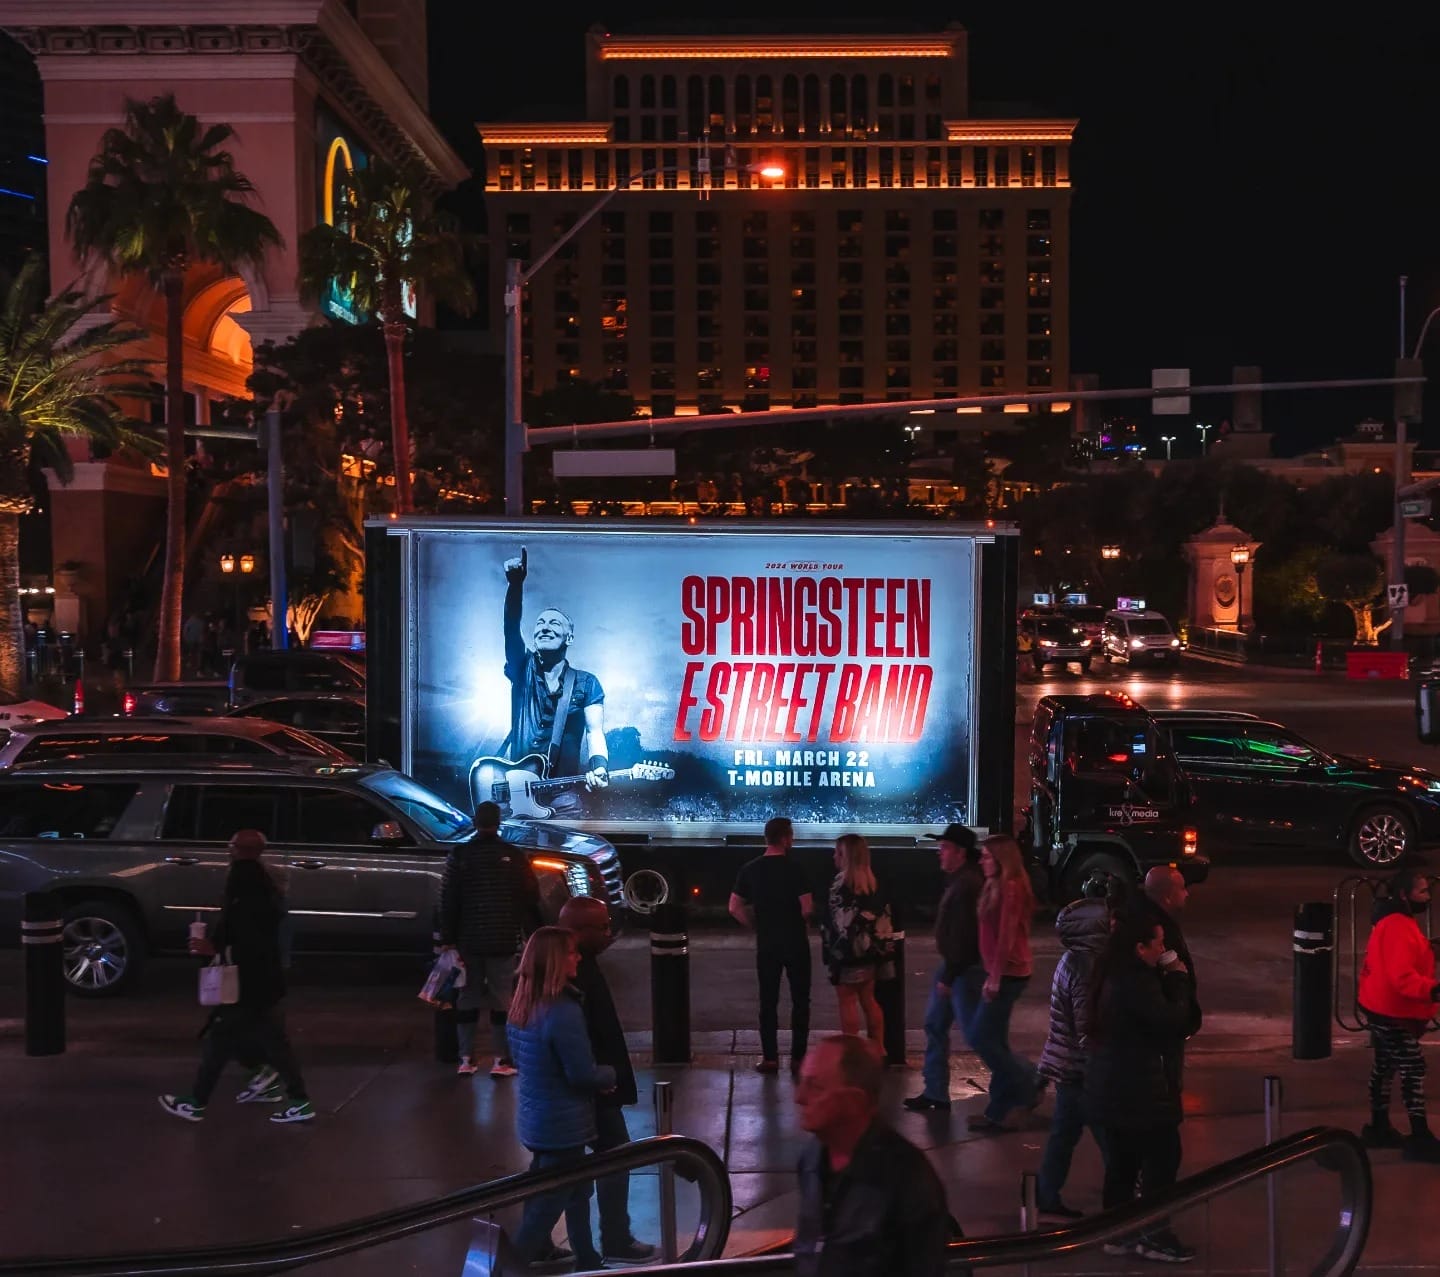 Illuminated billboard advertising a Springsteen concert at night.